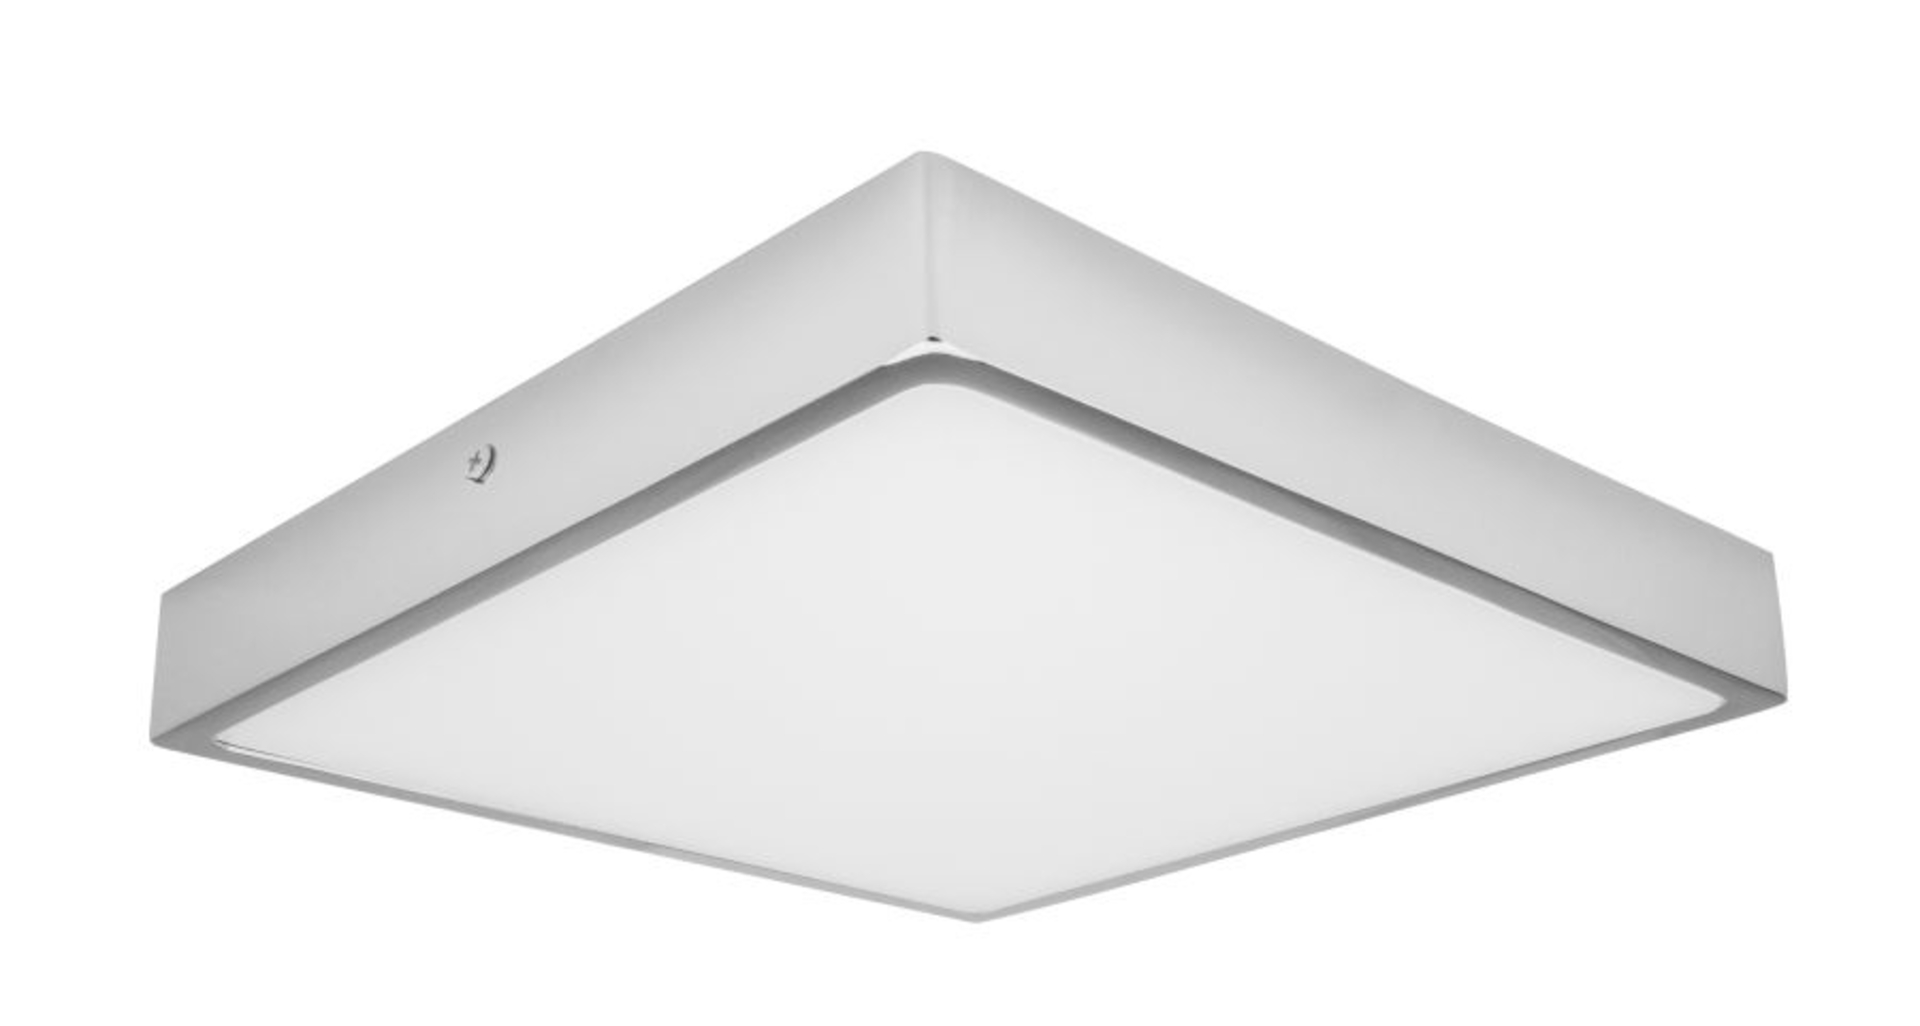 Palnas stropní LED svítidlo Egon čtverec 61003658